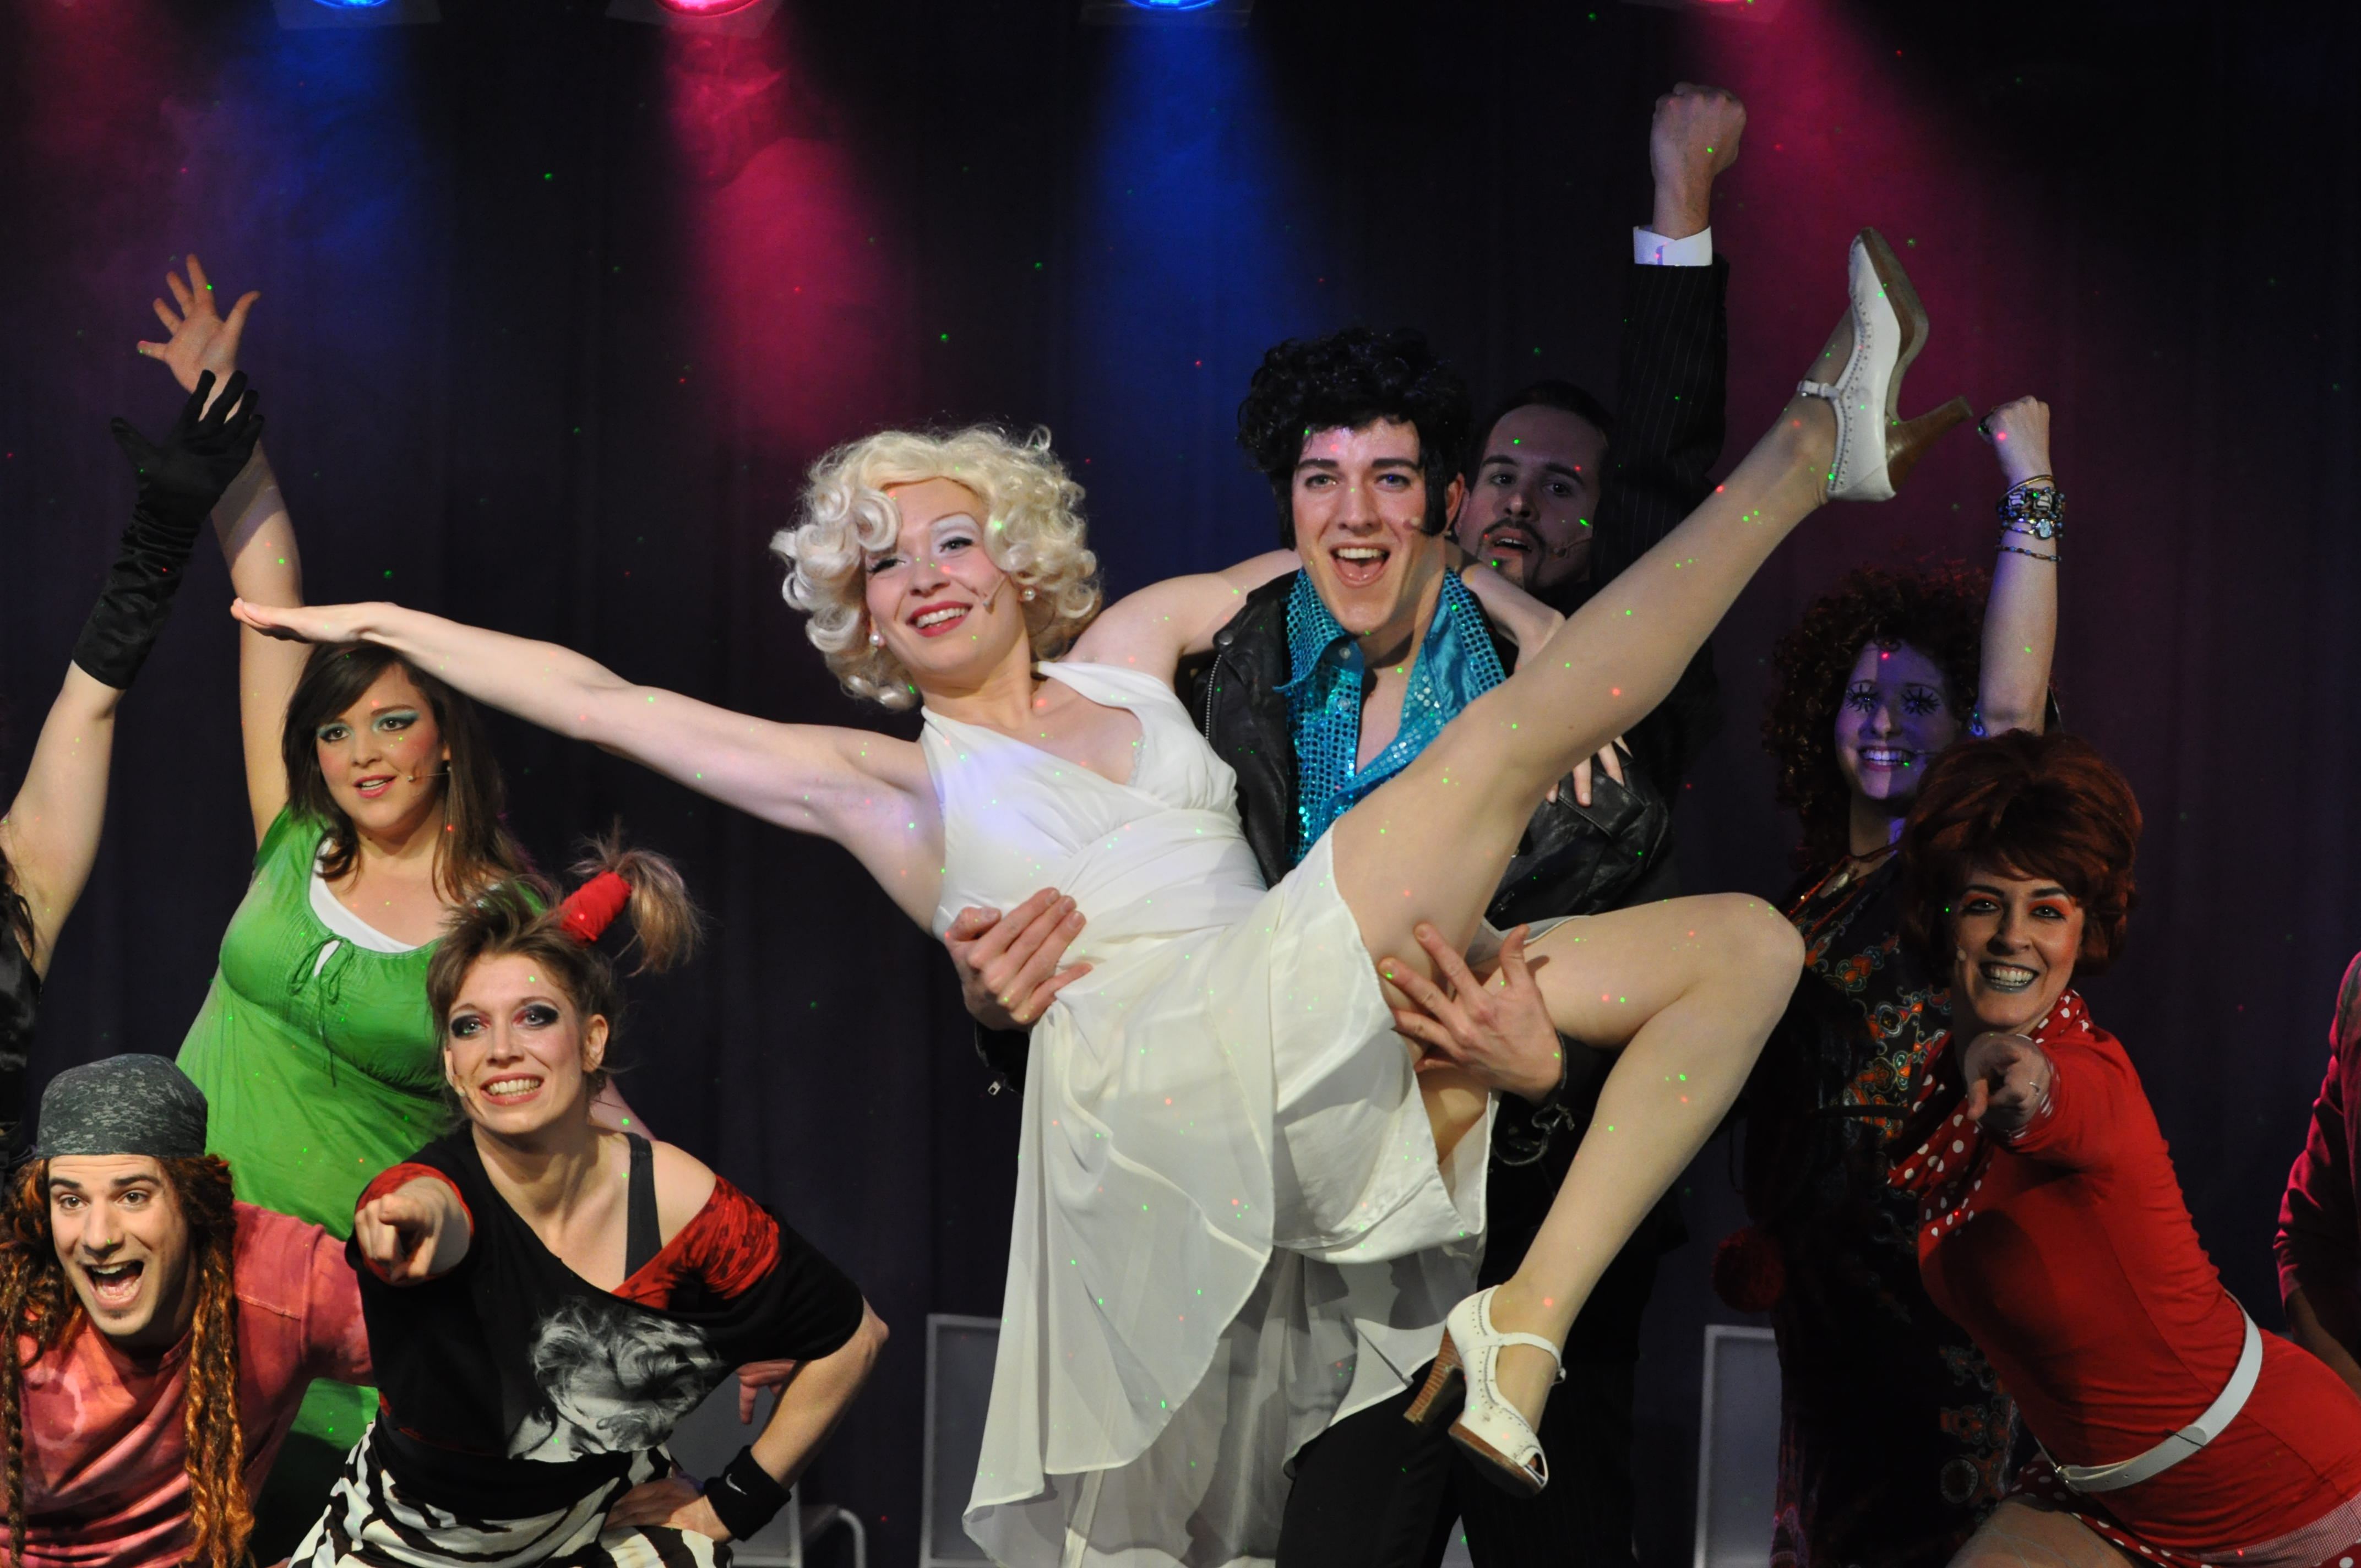 Ein Gruppenfoto des Musical-Ensembles in 2013: Ein nach Elvis Presley aussehender Mann hält eine Schauspielerin, die nach Marilyn Monroe stilisiert wurde, auf den Armen.